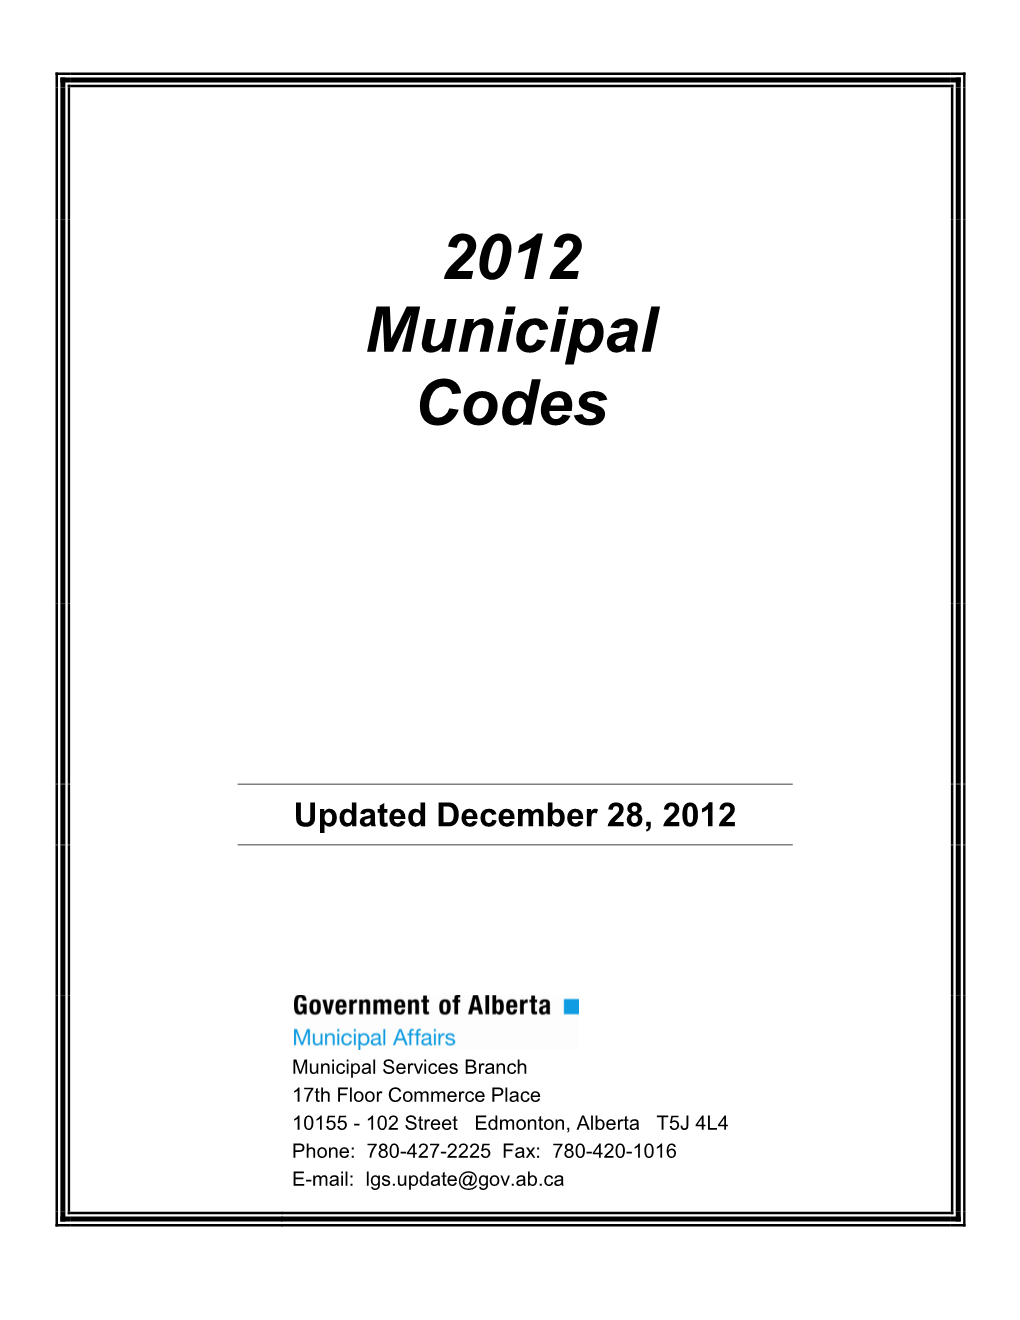 2012 Municipal Codes